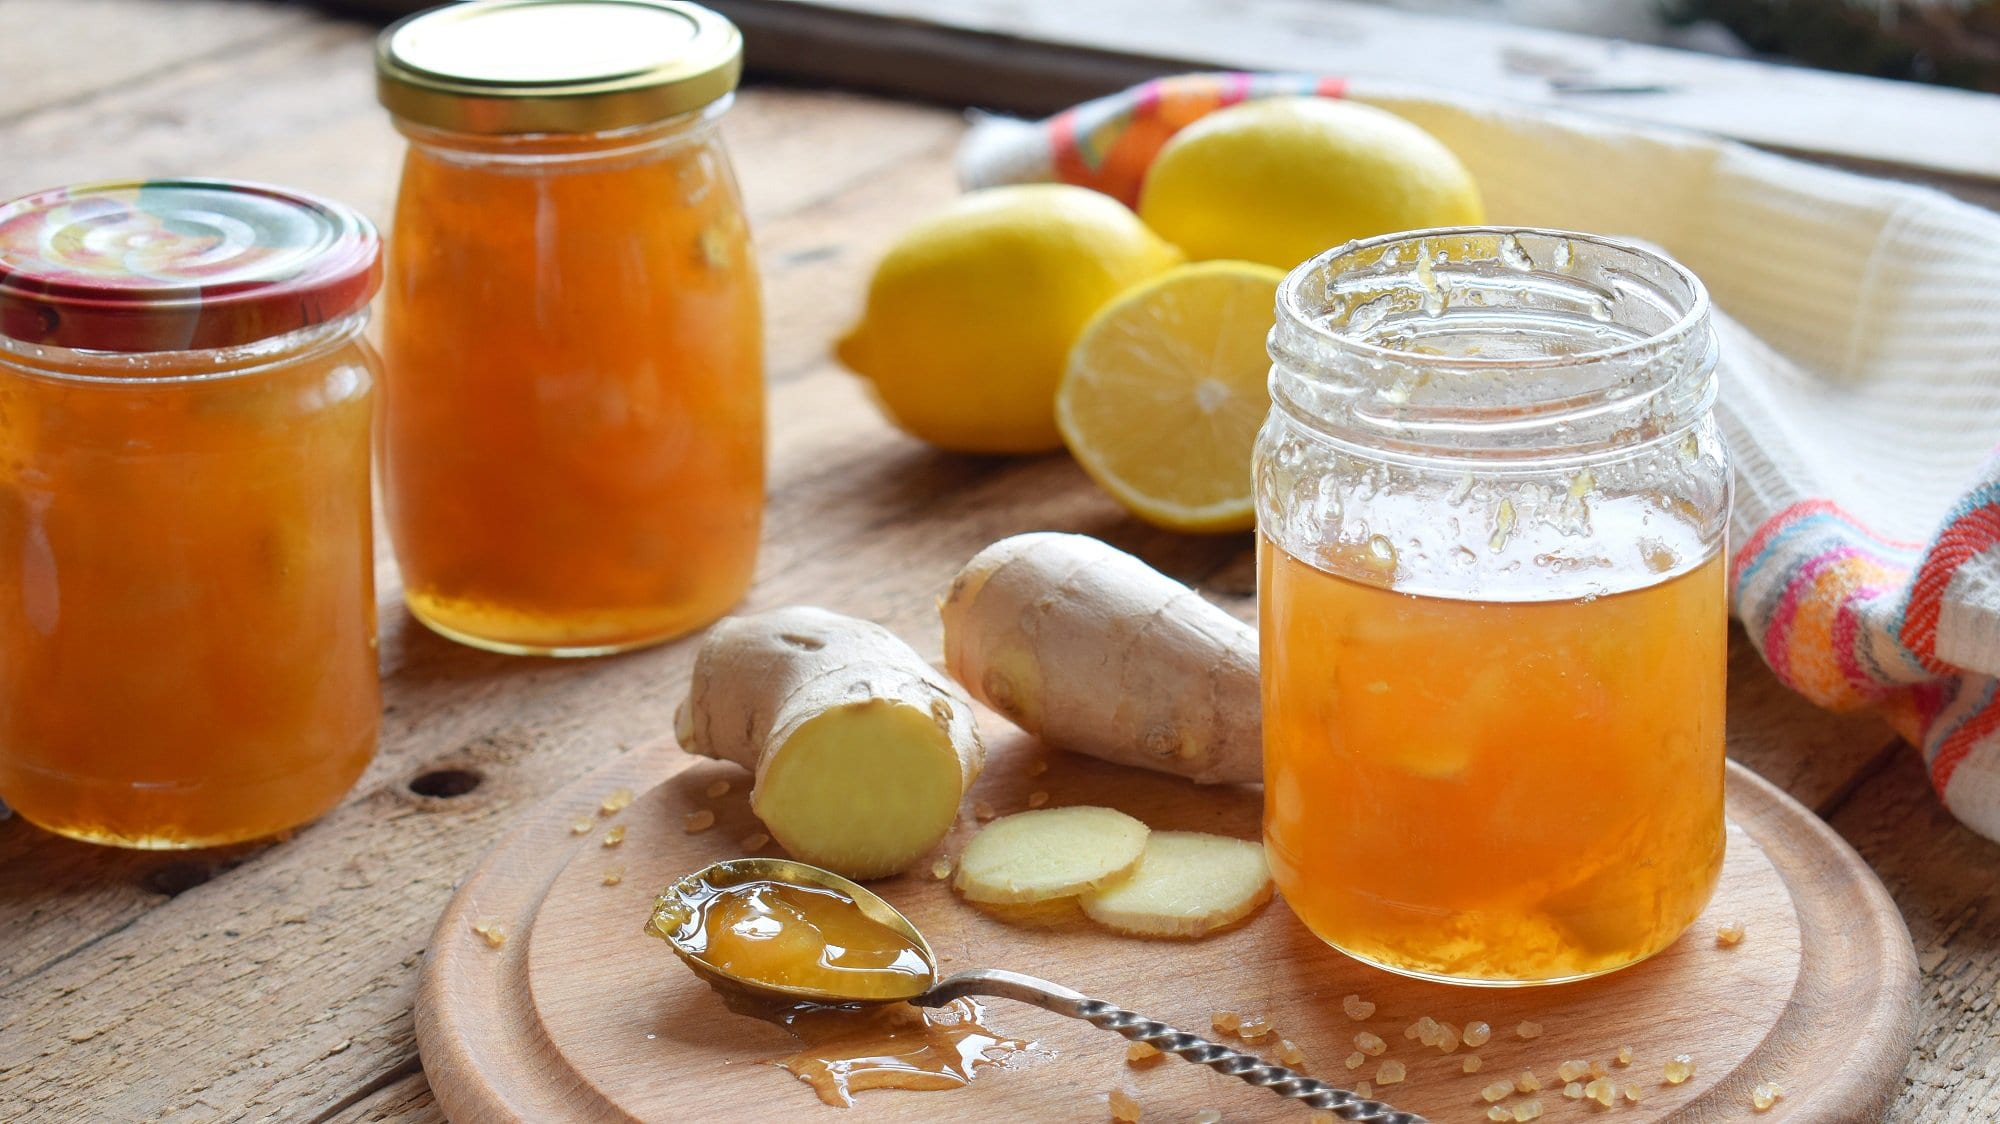 Frontal: drei Gläser Zitronen-Ingwer-Marmelade stehen auf einem Untergrund aus Holz. Drum herum liegen frischer Ingwer und Zitronen und ein Teelöffel.